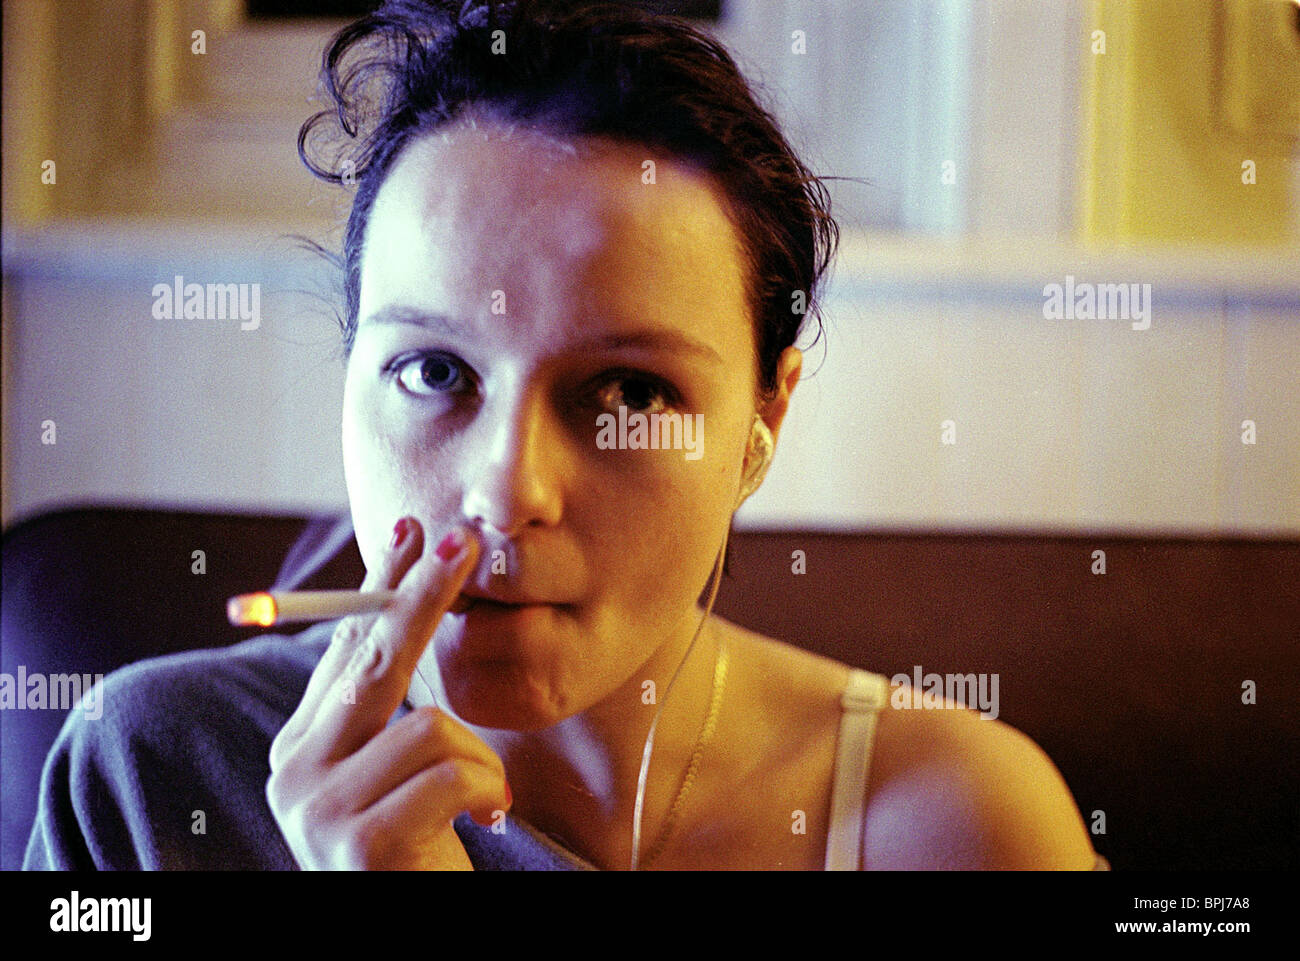 Samantha Morton fumando un cigarrillo (o marihuana)
